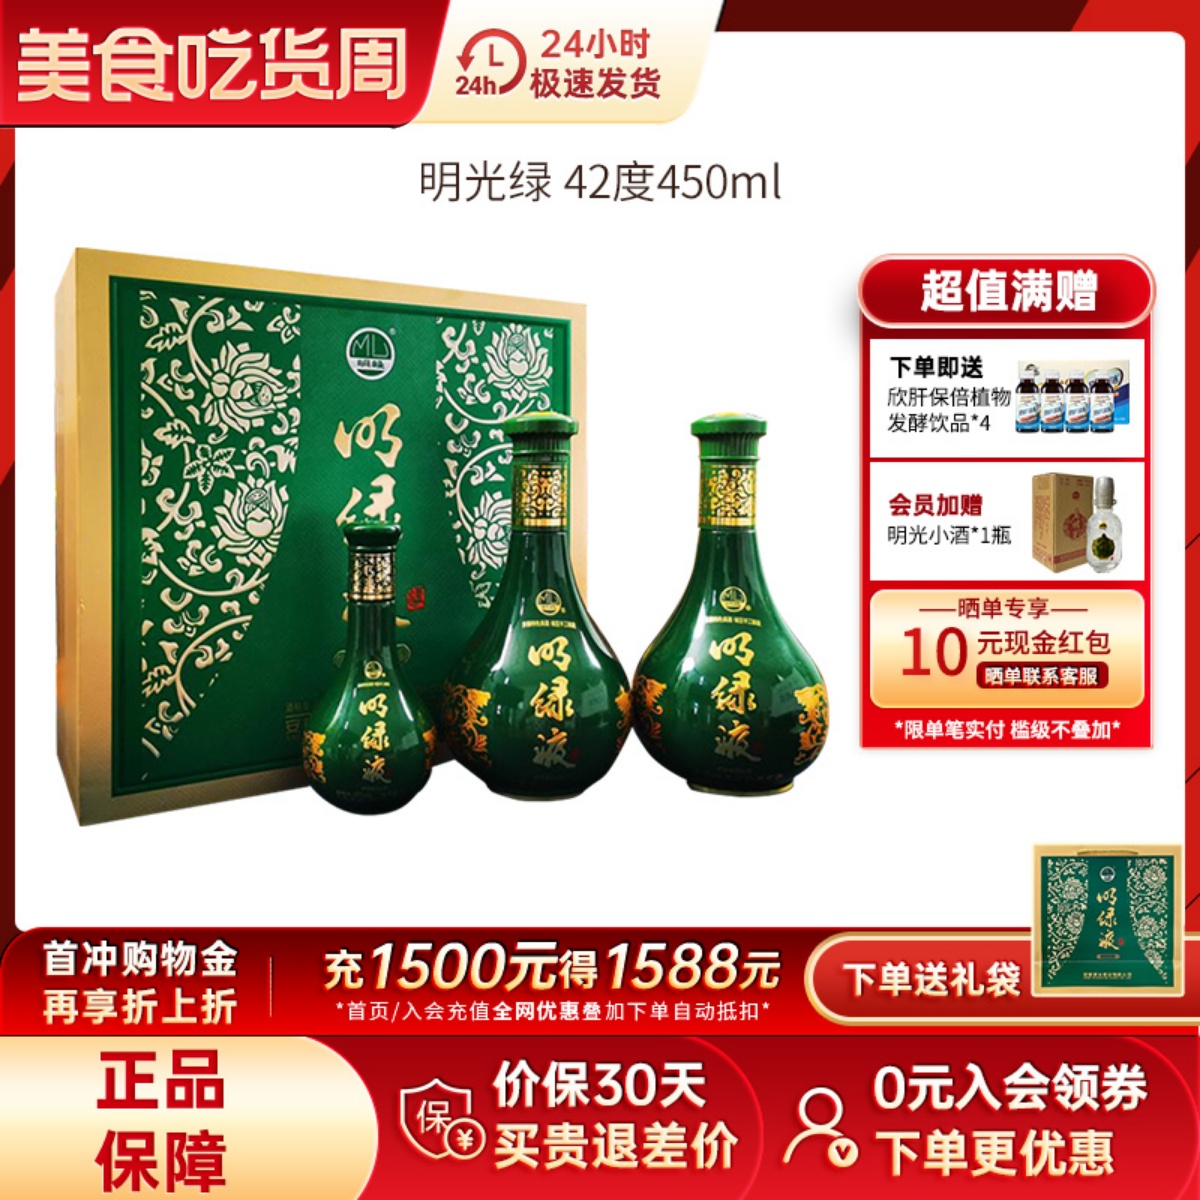 安徽老明光明绿液礼盒明绿香型白酒42度450ml2瓶装+150ml官方老酒